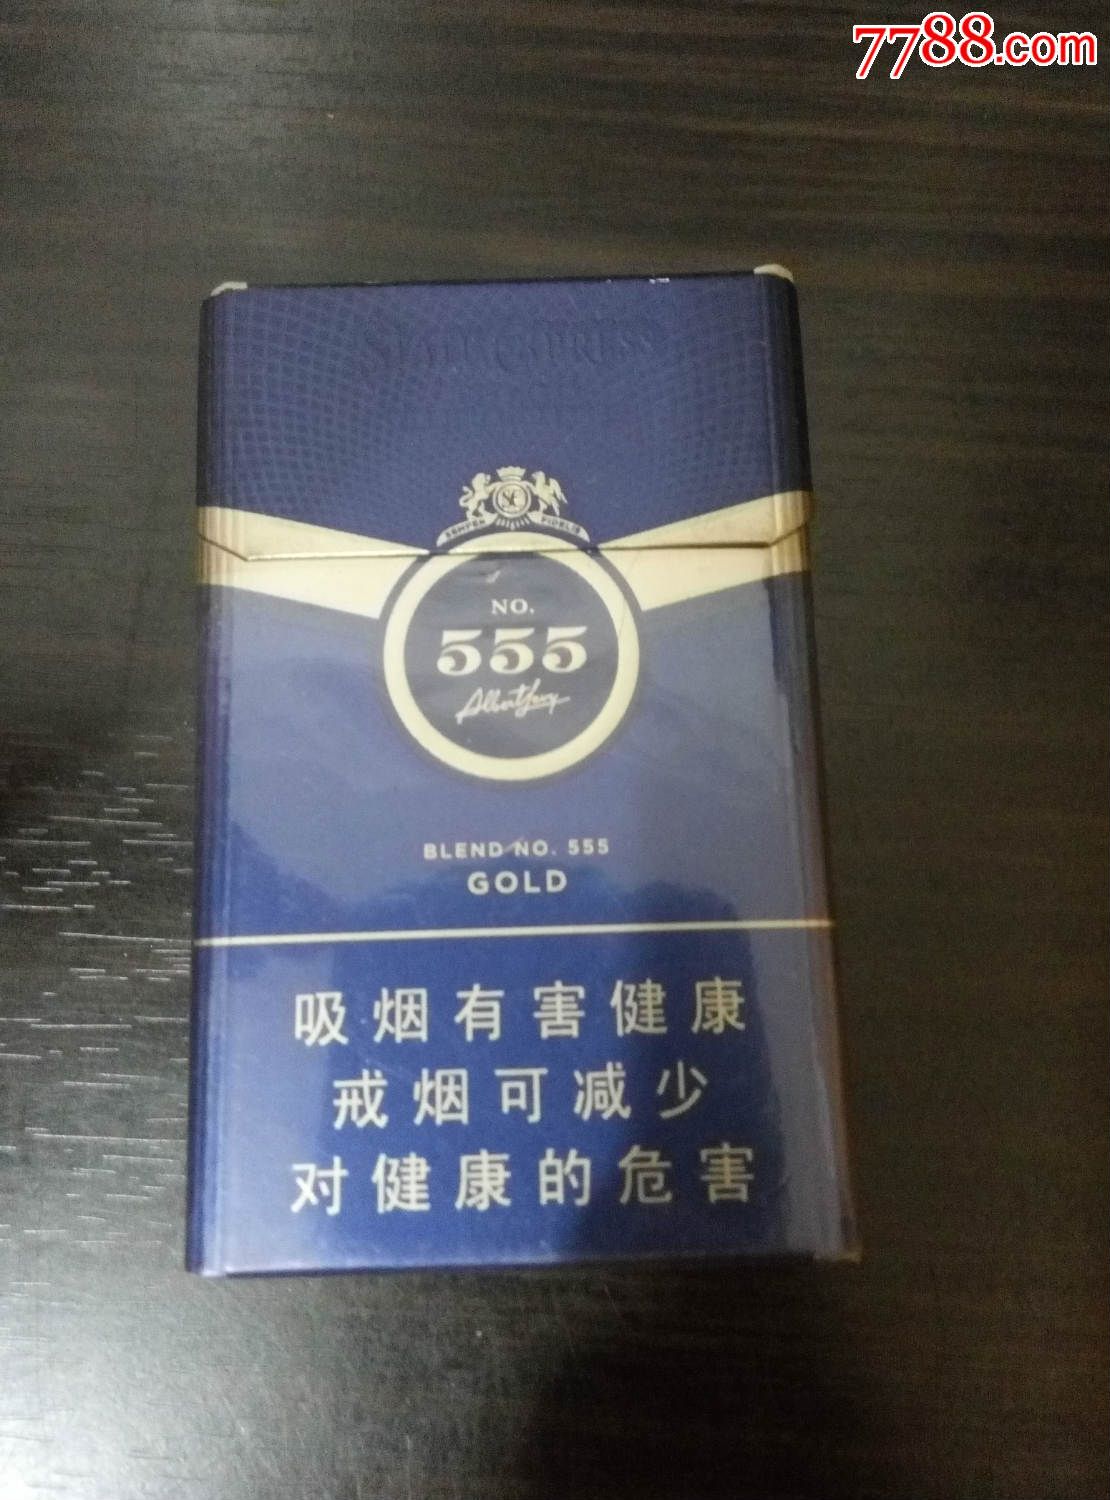 555香烟所有图片大全图片